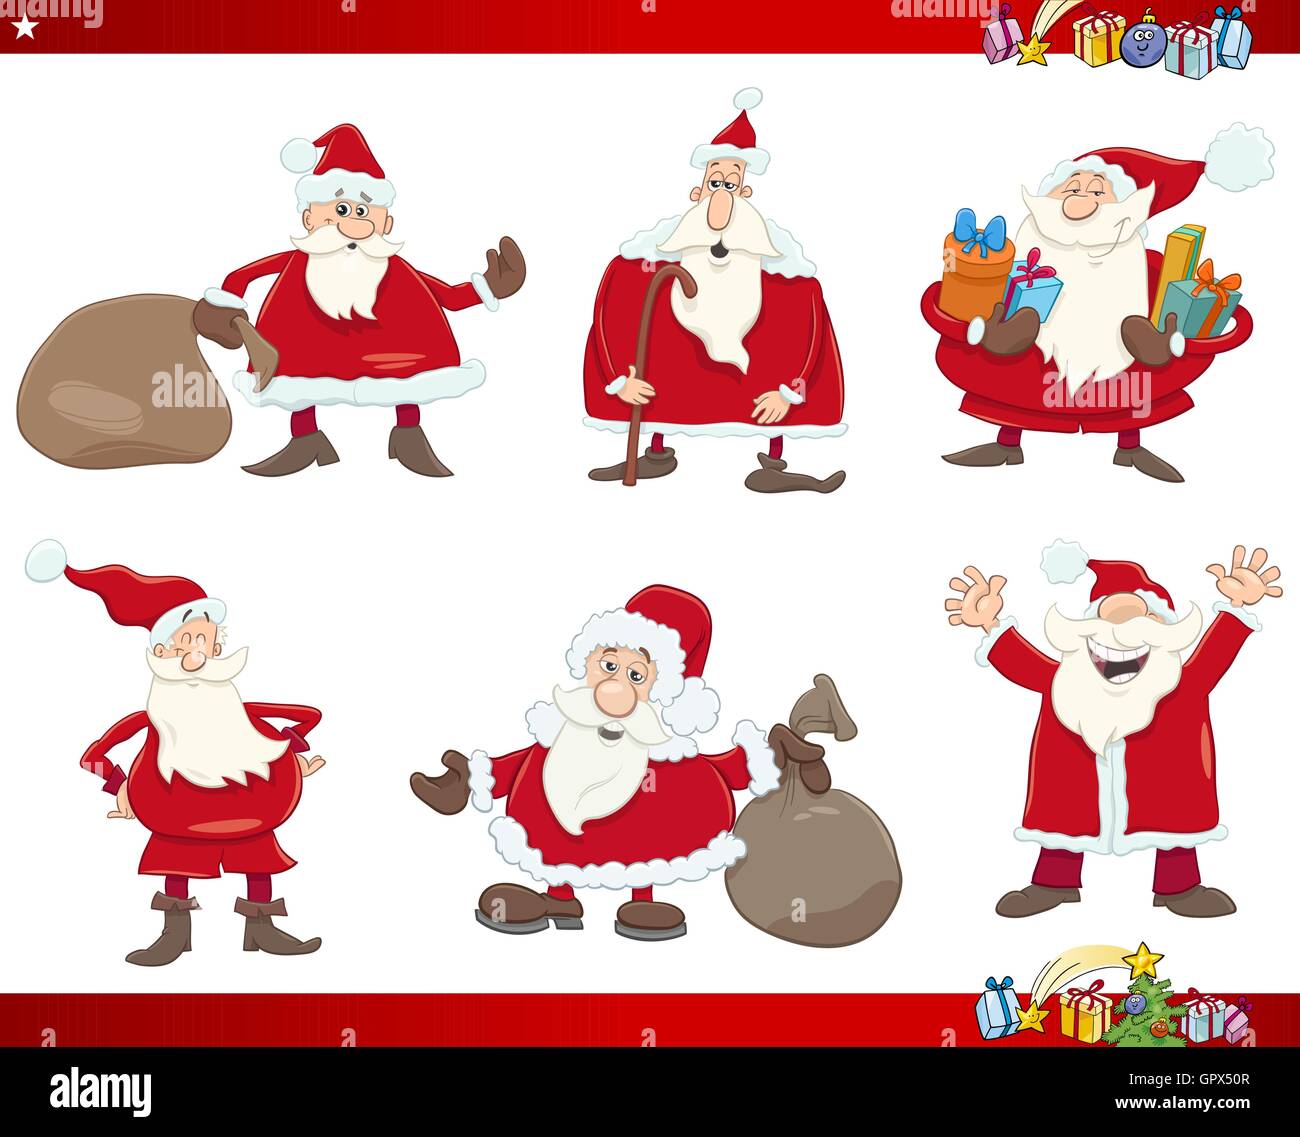 Comic Illustration Der Weihnachtsmann Mit Geschenken Fur Weihnachten Figuren Set Stock Vektorgrafik Alamy